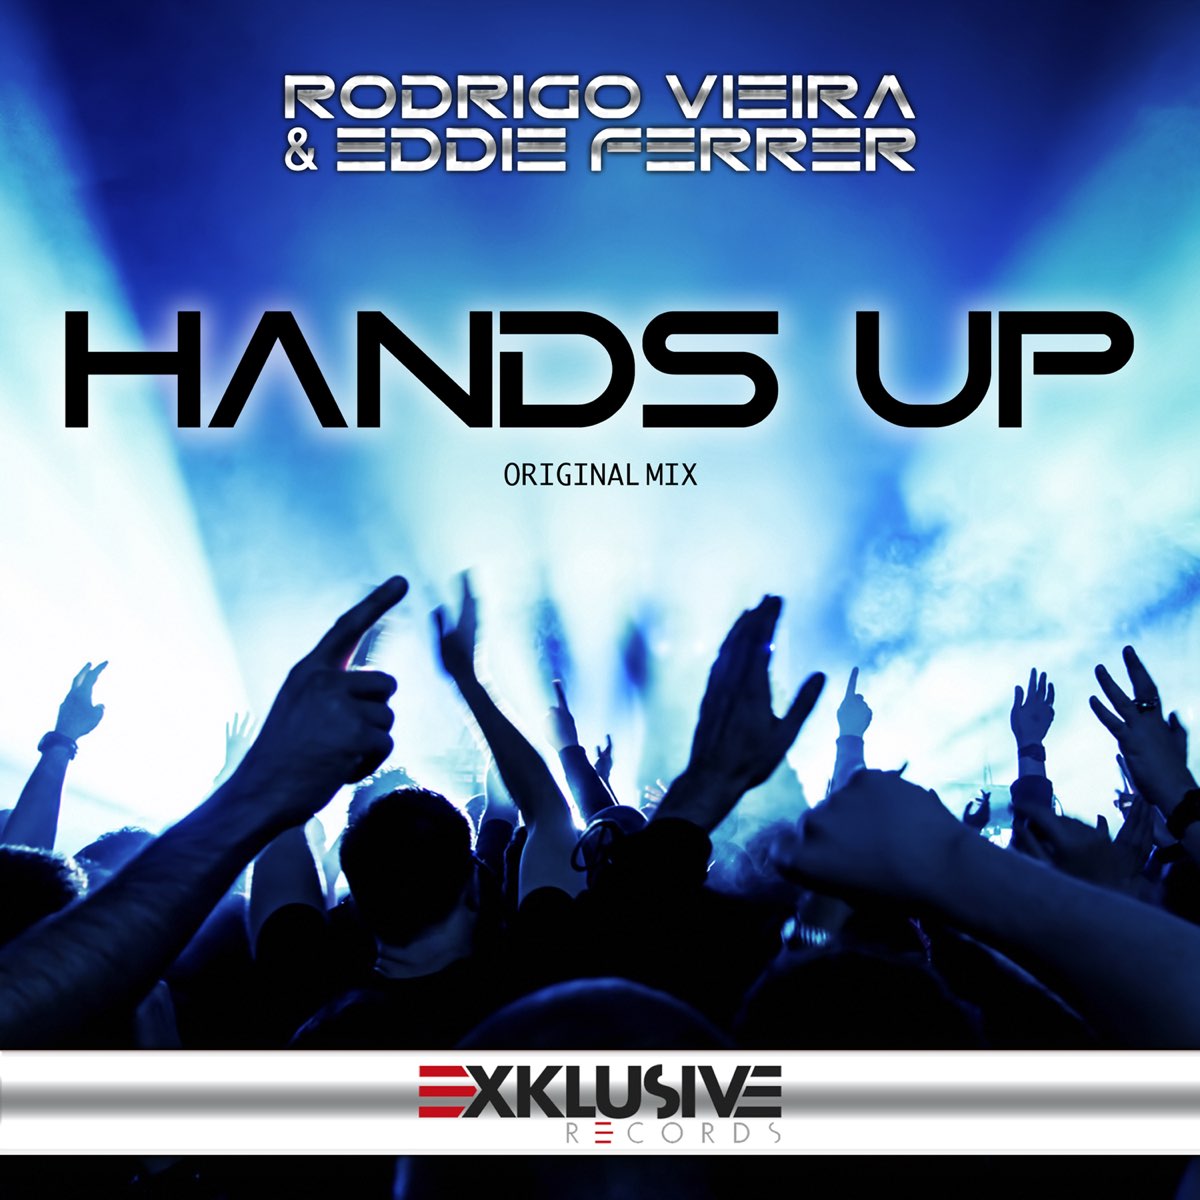 Hands music. Hands up. Hang up. Hands up песня. Песни похожие на hands up.